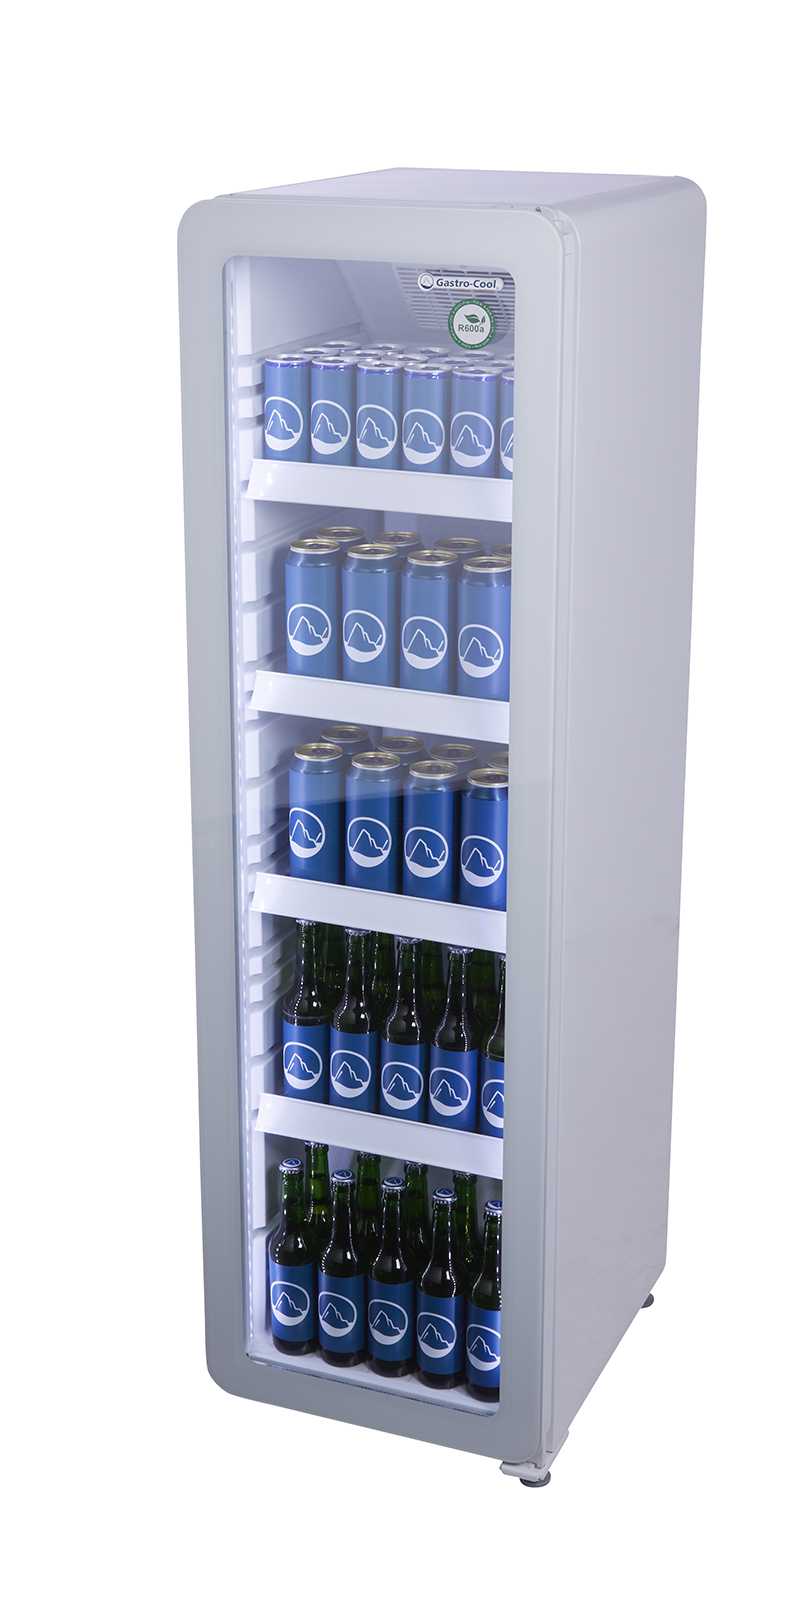 Flaschenkühlschrank schmal - Retro Look - vintage - Glastür - weiß - GCGD135 - Seitenansicht gefühlt